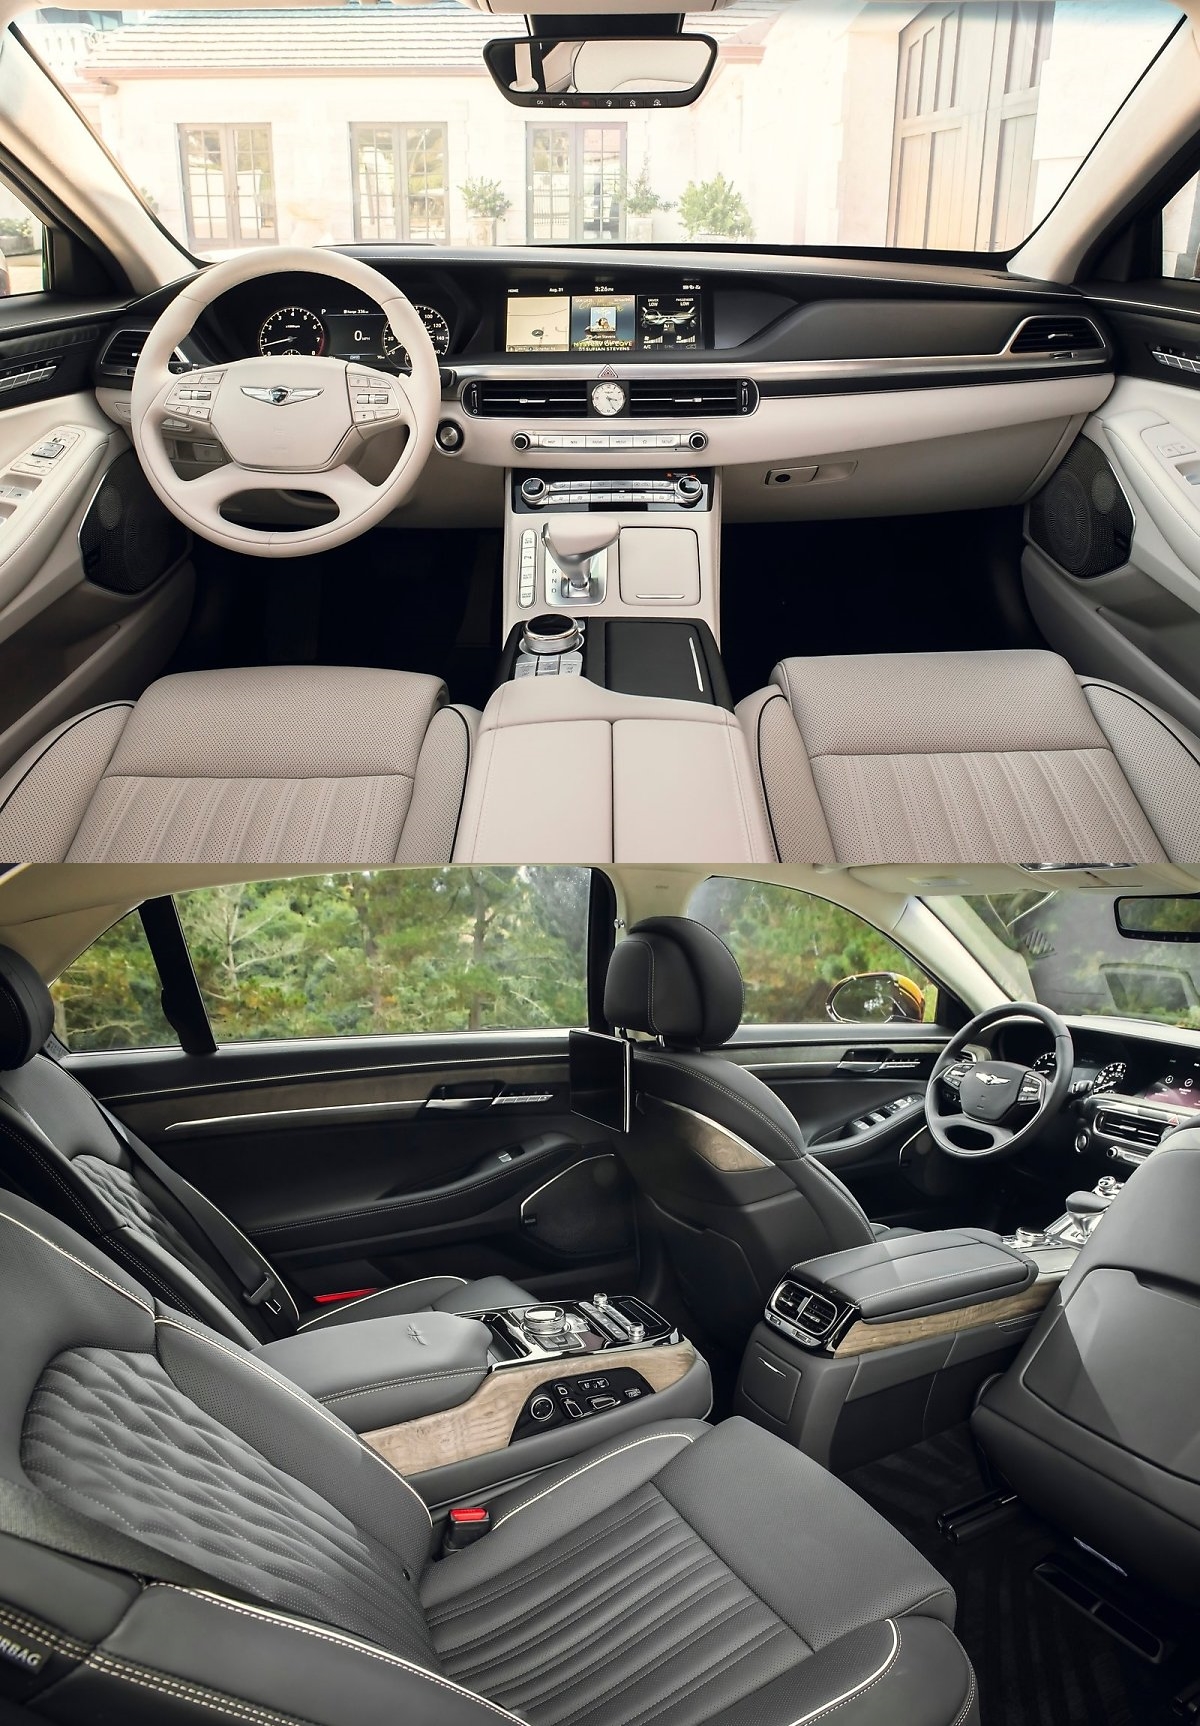 '제네시스 G90'의 차량 내부 사진. 국내 소비자의 선호에 맞는 넓은 뒷좌석과 리클라이닝 각도, 그리고 다양한 편의장비를 갖추고 있다.